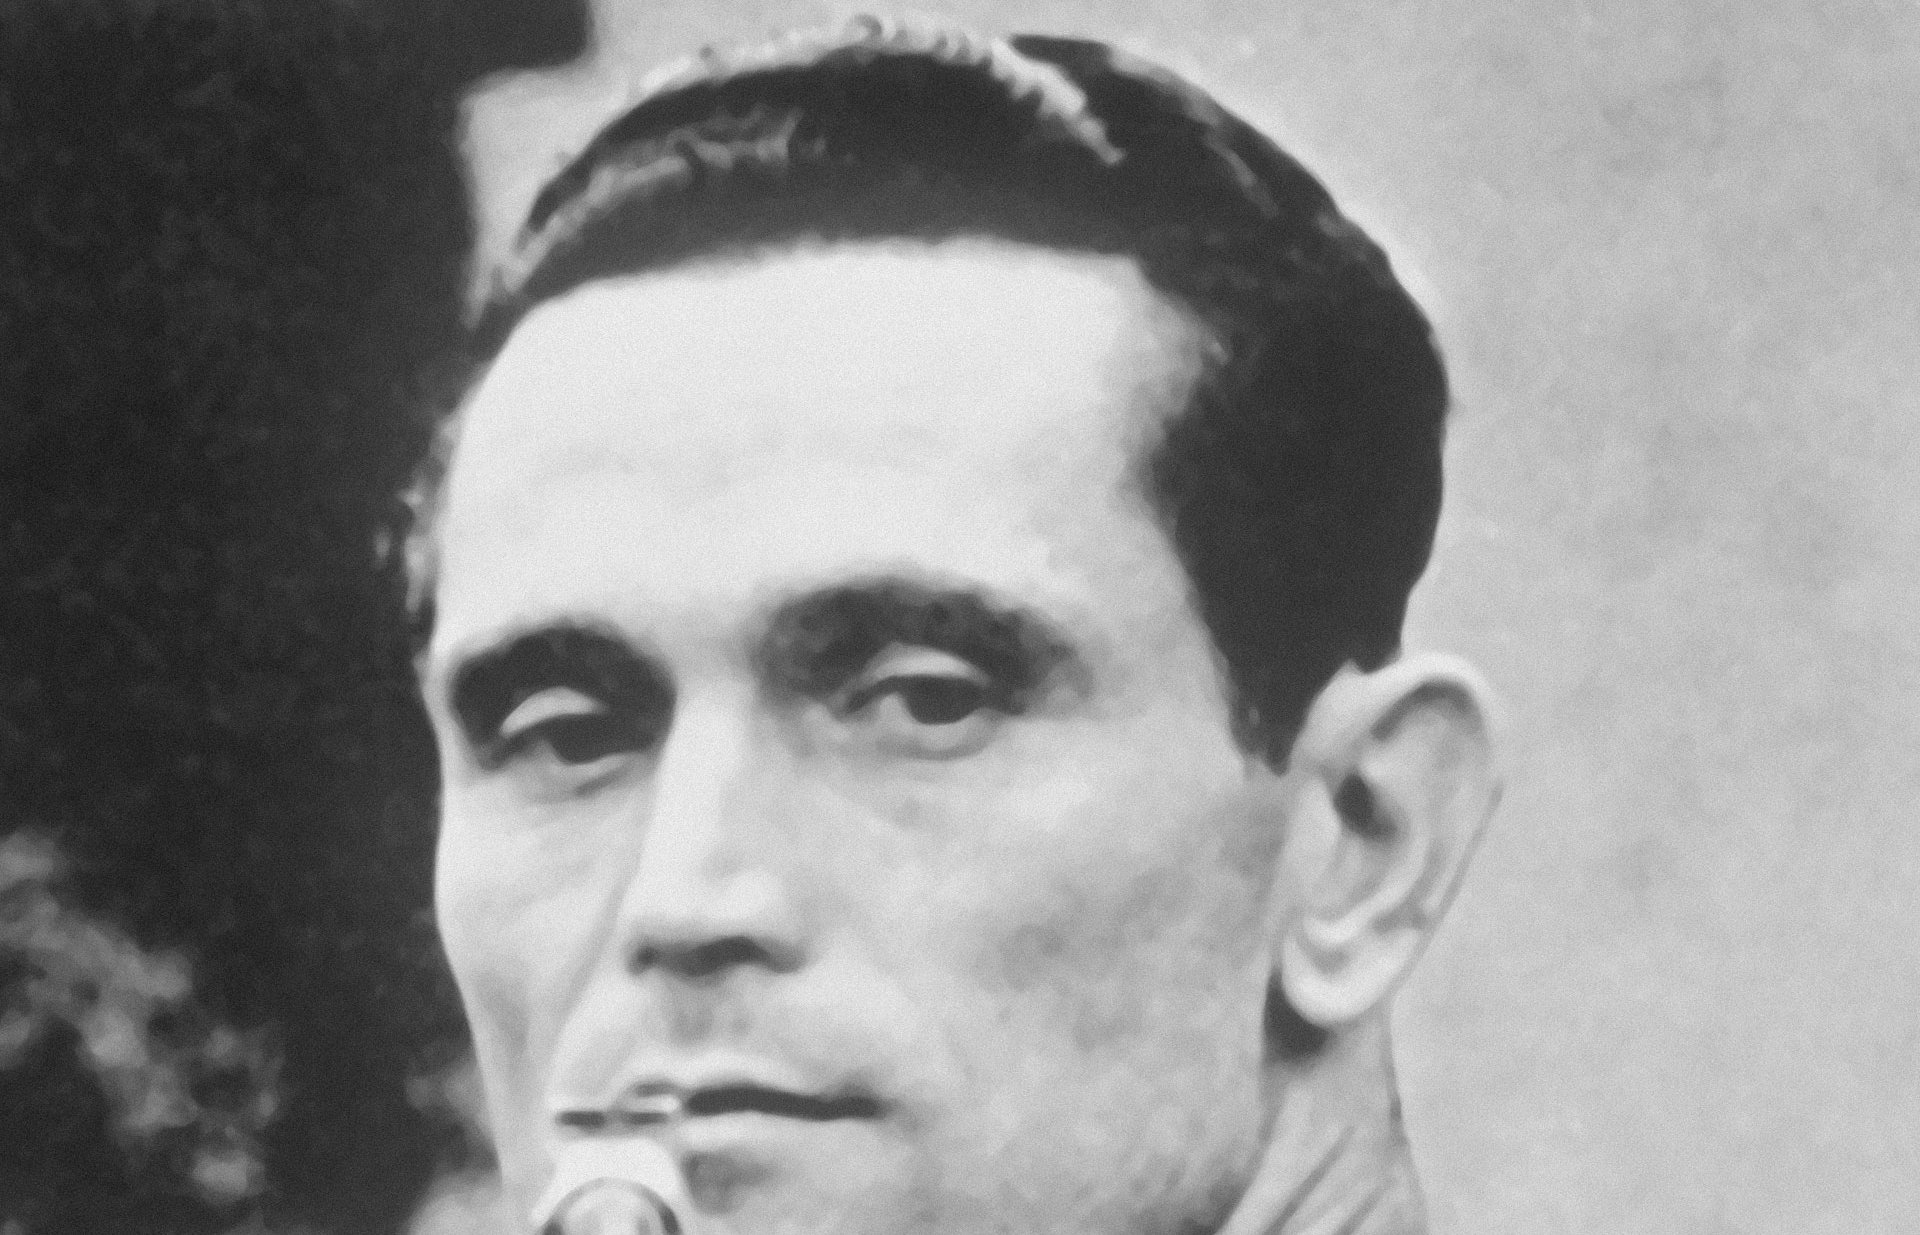 Photos Karoly Takacs [Hongrie] remporte l'épreuve de tir rapide au pistolet avec un score de 580 points aux Jeux Olympiques, photographie, 1948.
